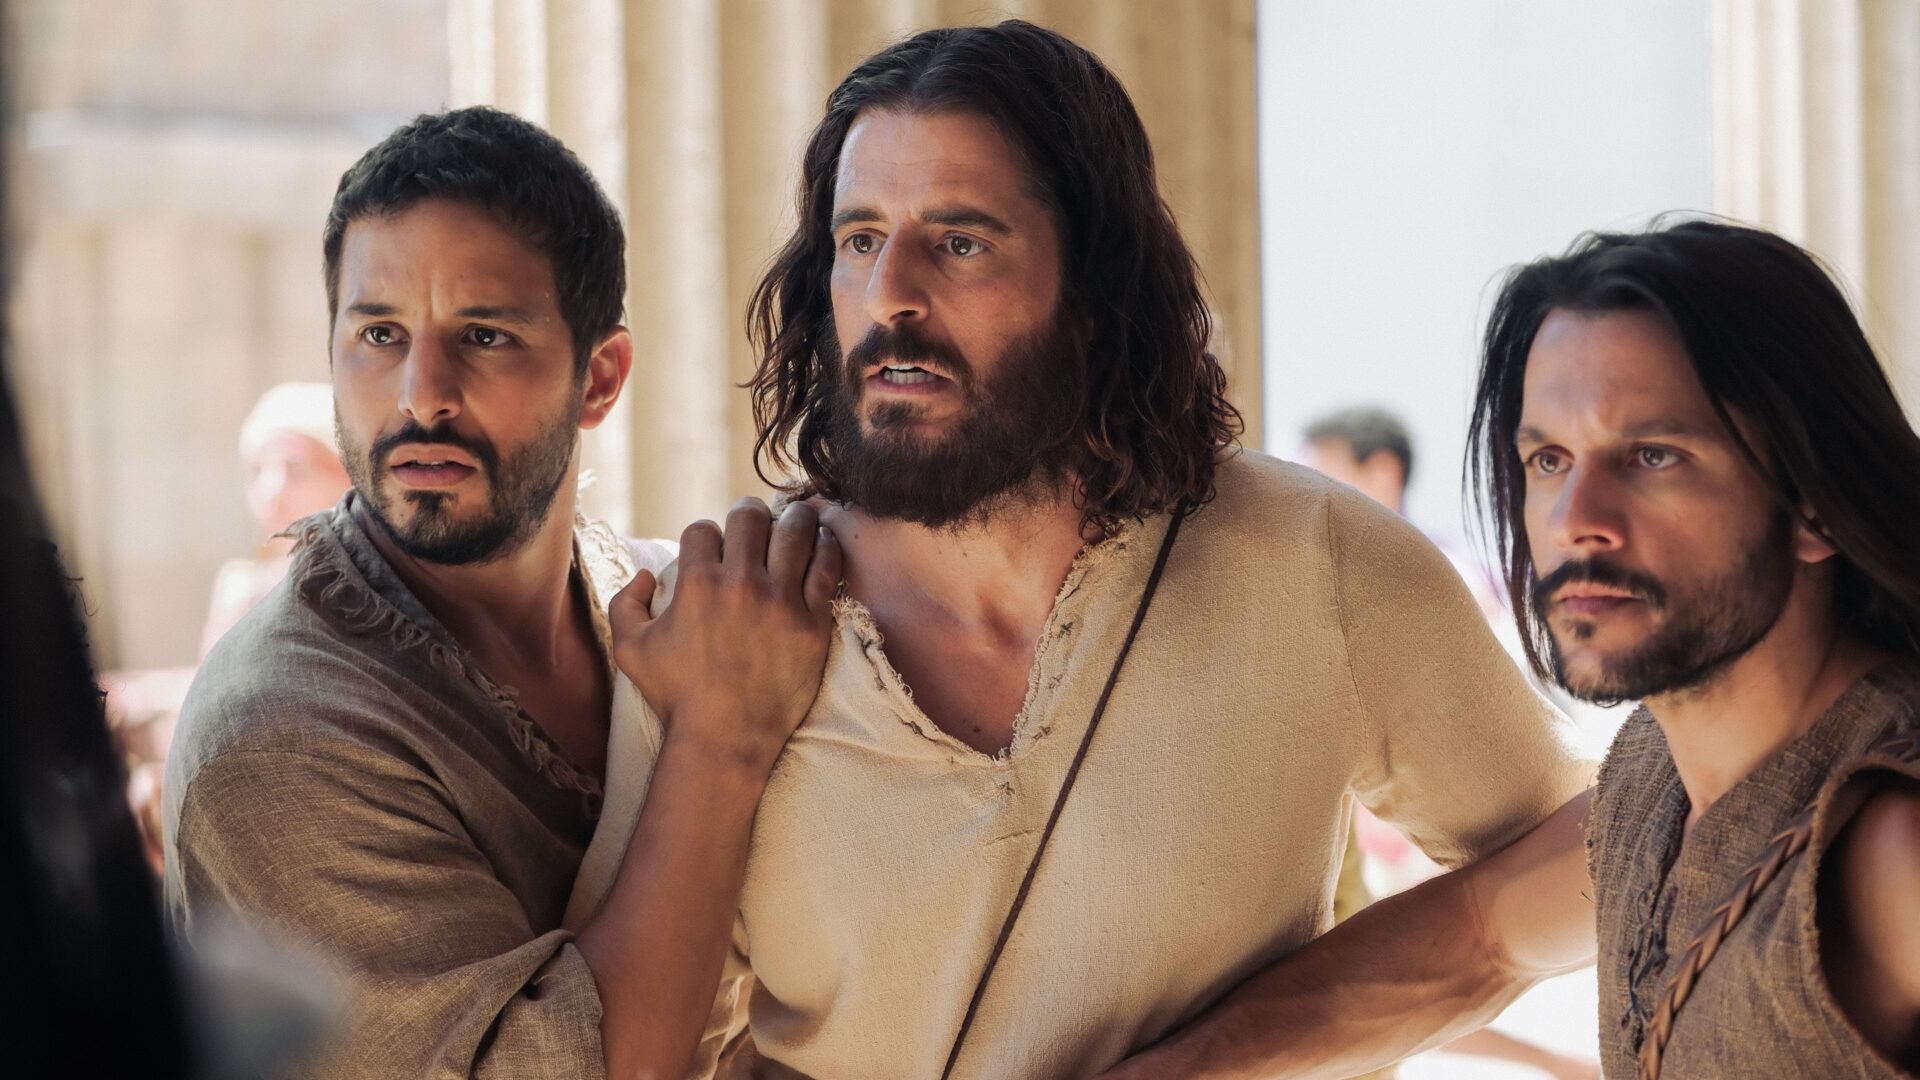 Quarta temporada de ‘The Chosen’ mostra tensão entre Jesus, fariseus e romanos